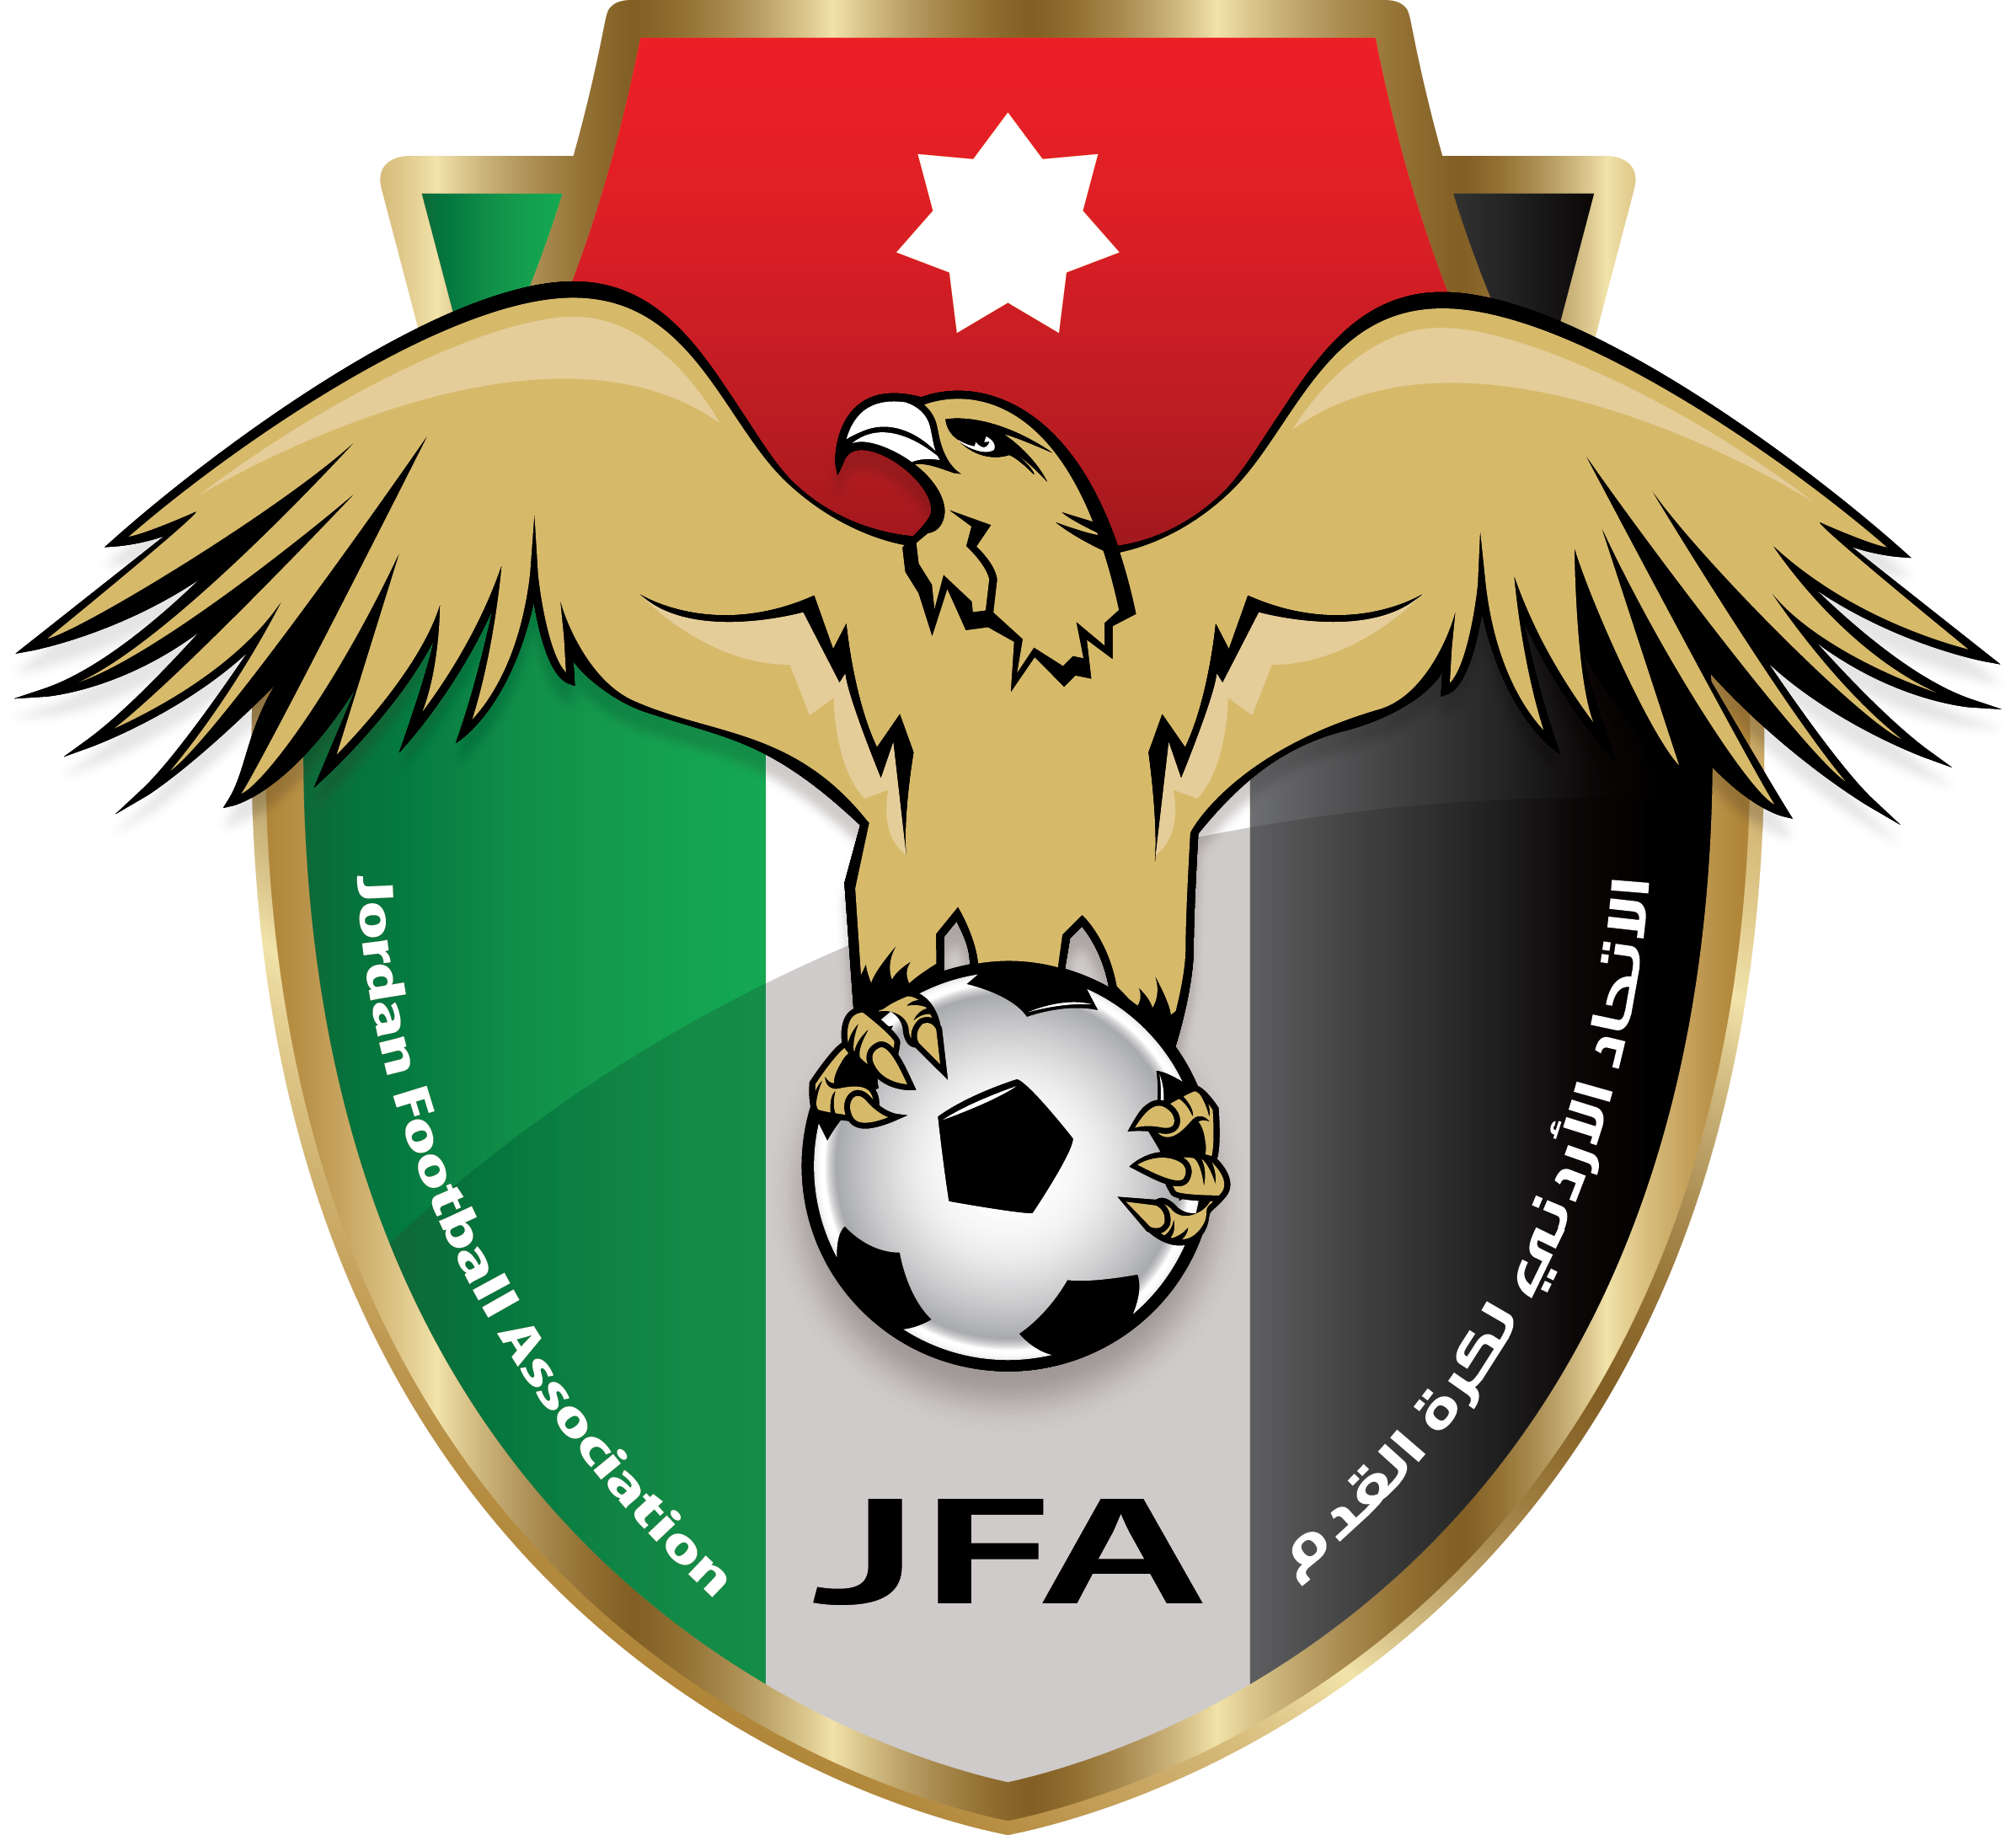 約旦國家男子足球隊(約旦國家足球隊)